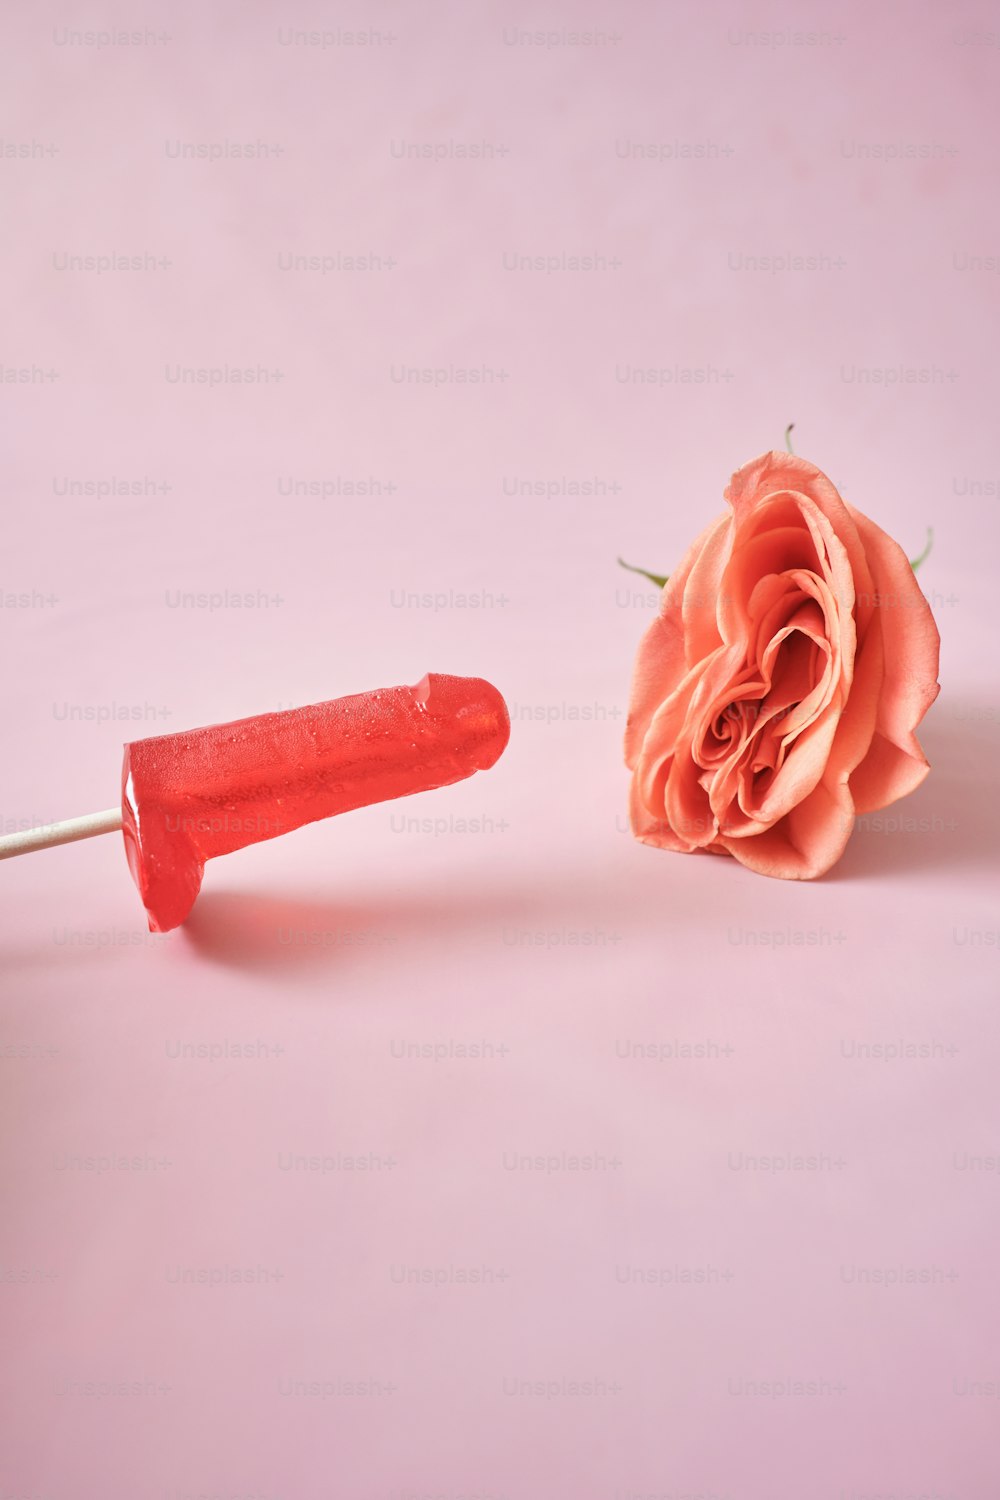 une rose rose et un objet en plastique rouge sur fond rose